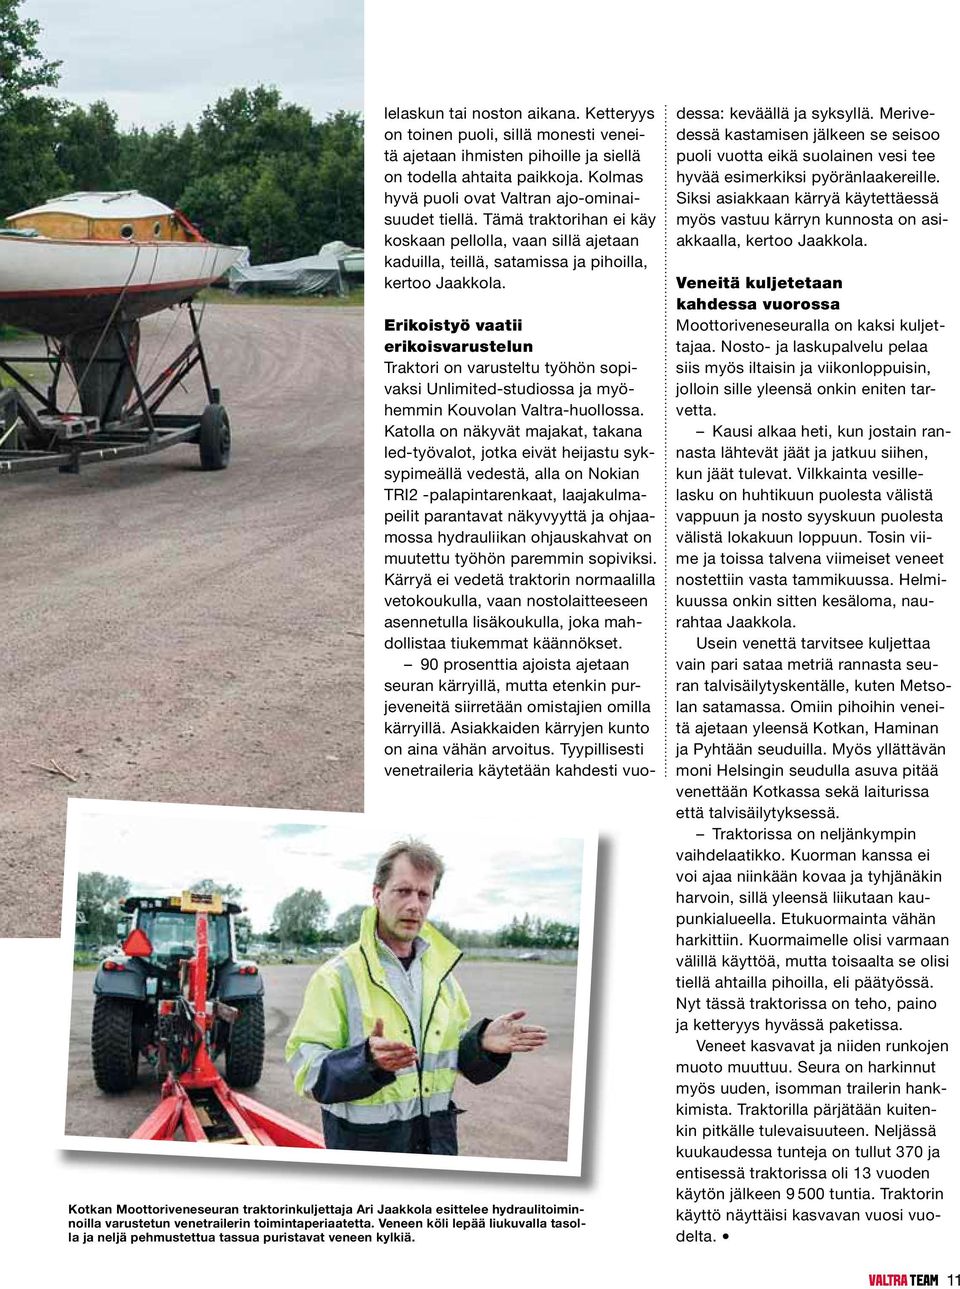 Kotkan Moottoriveneseuran traktorinkuljettaja Ari Jaakkola esittelee hydraulitoiminnoilla varustetun venetrailerin toimintaperiaatetta.